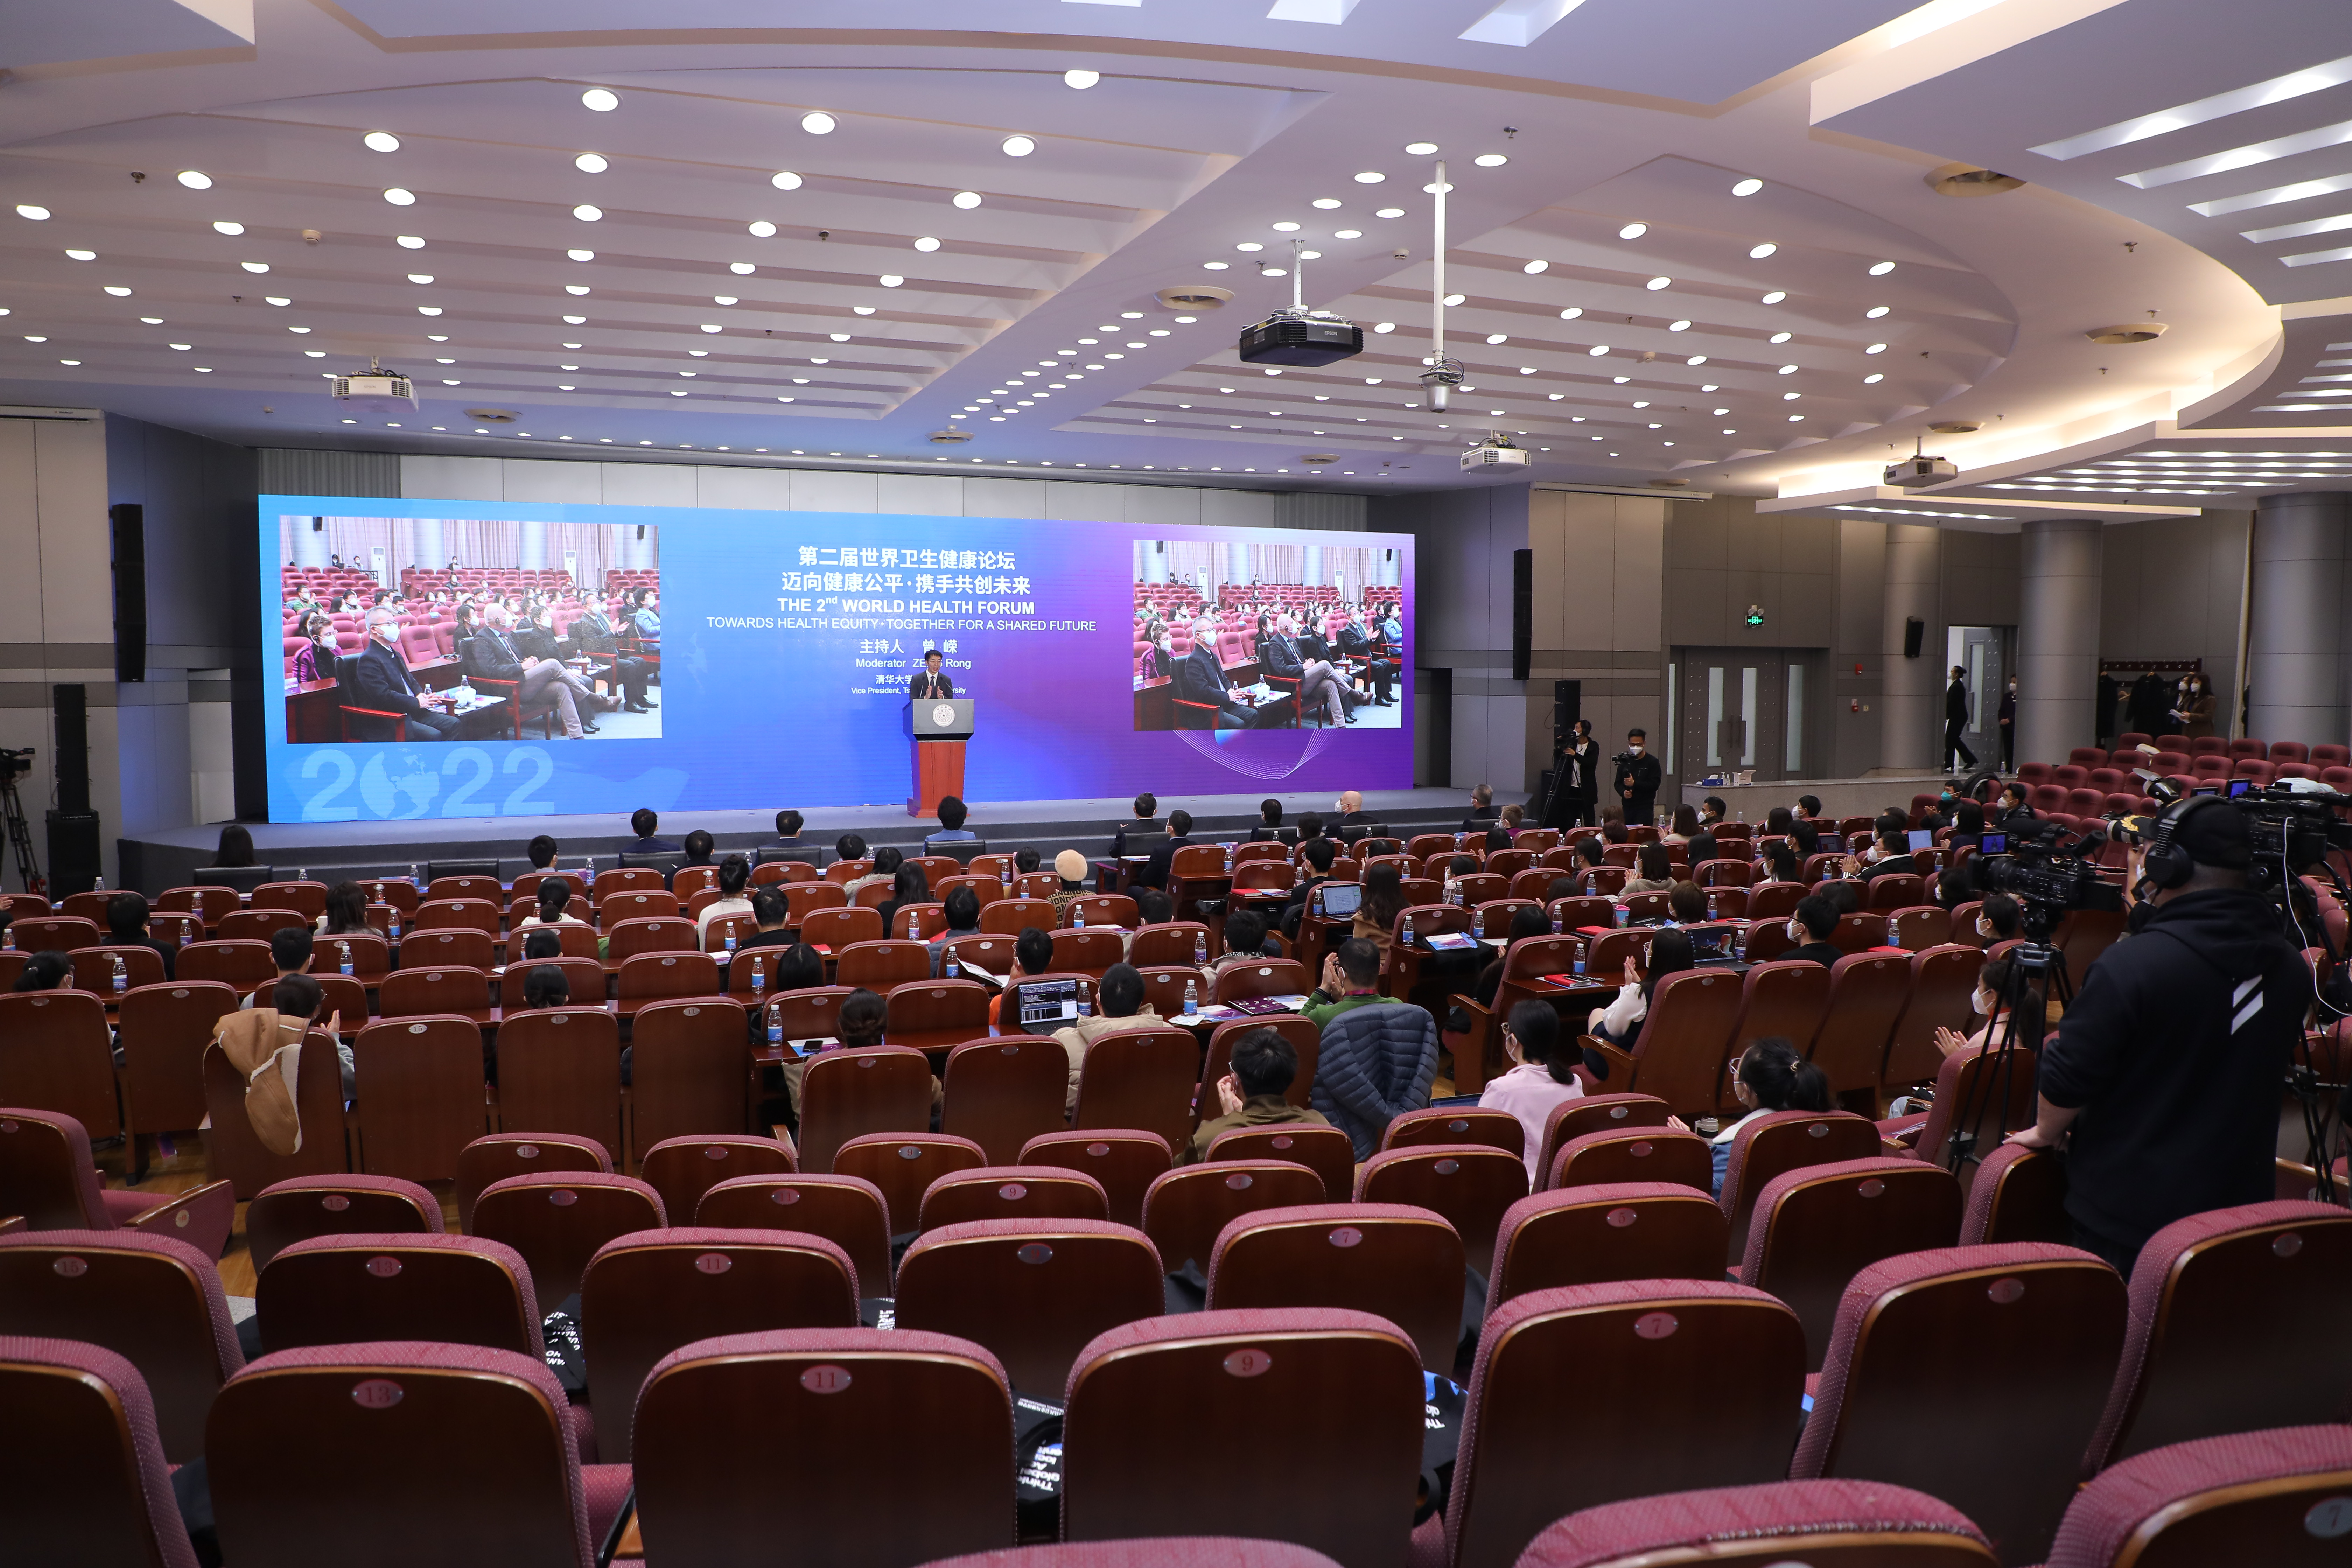 第二届世界卫生健康论坛在清华大学开幕